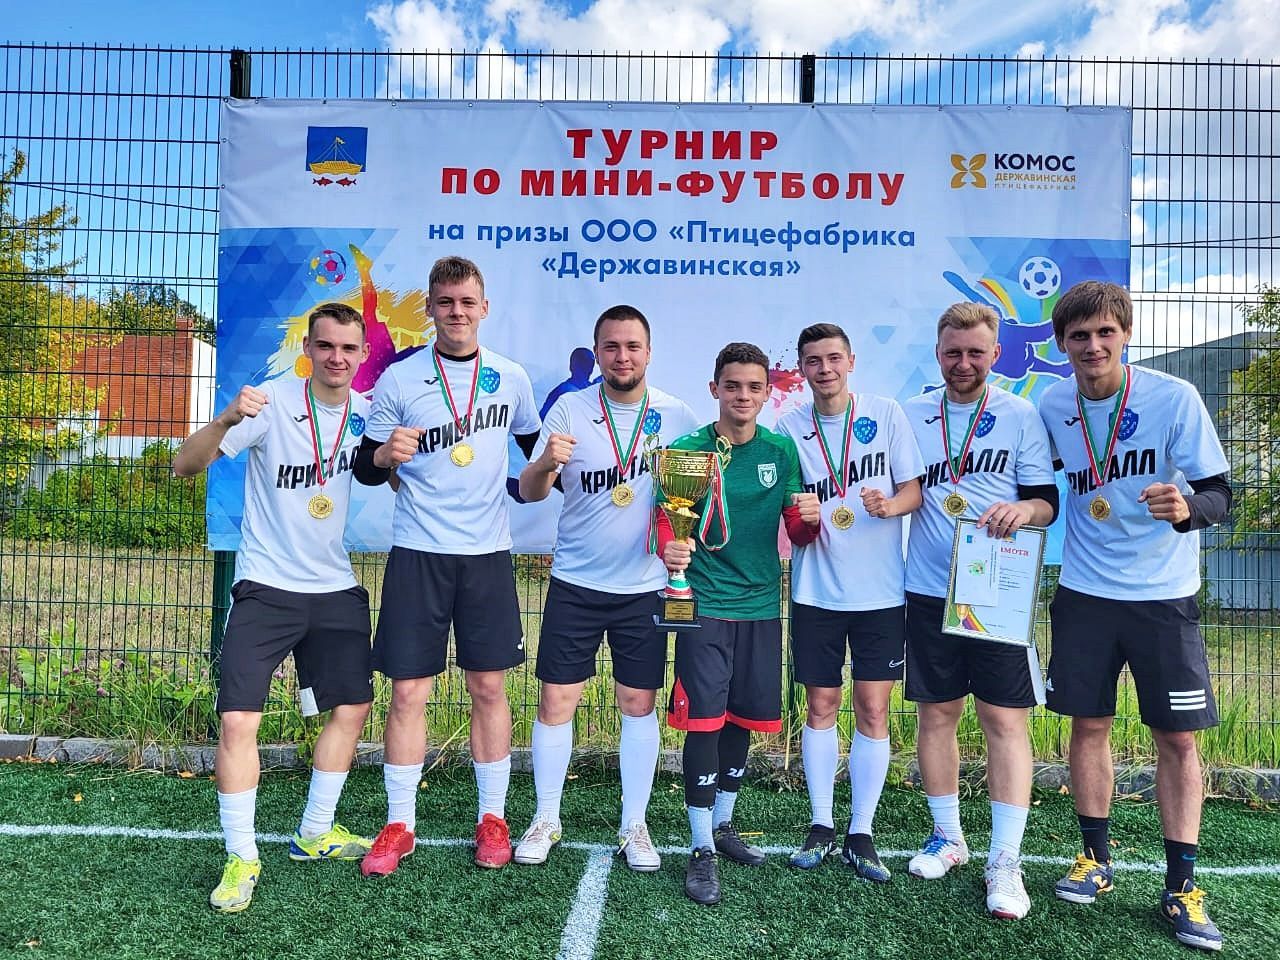 «Державинская» кош фабрикасы призларына мини-футбол буенча турнир нәтиҗәләре